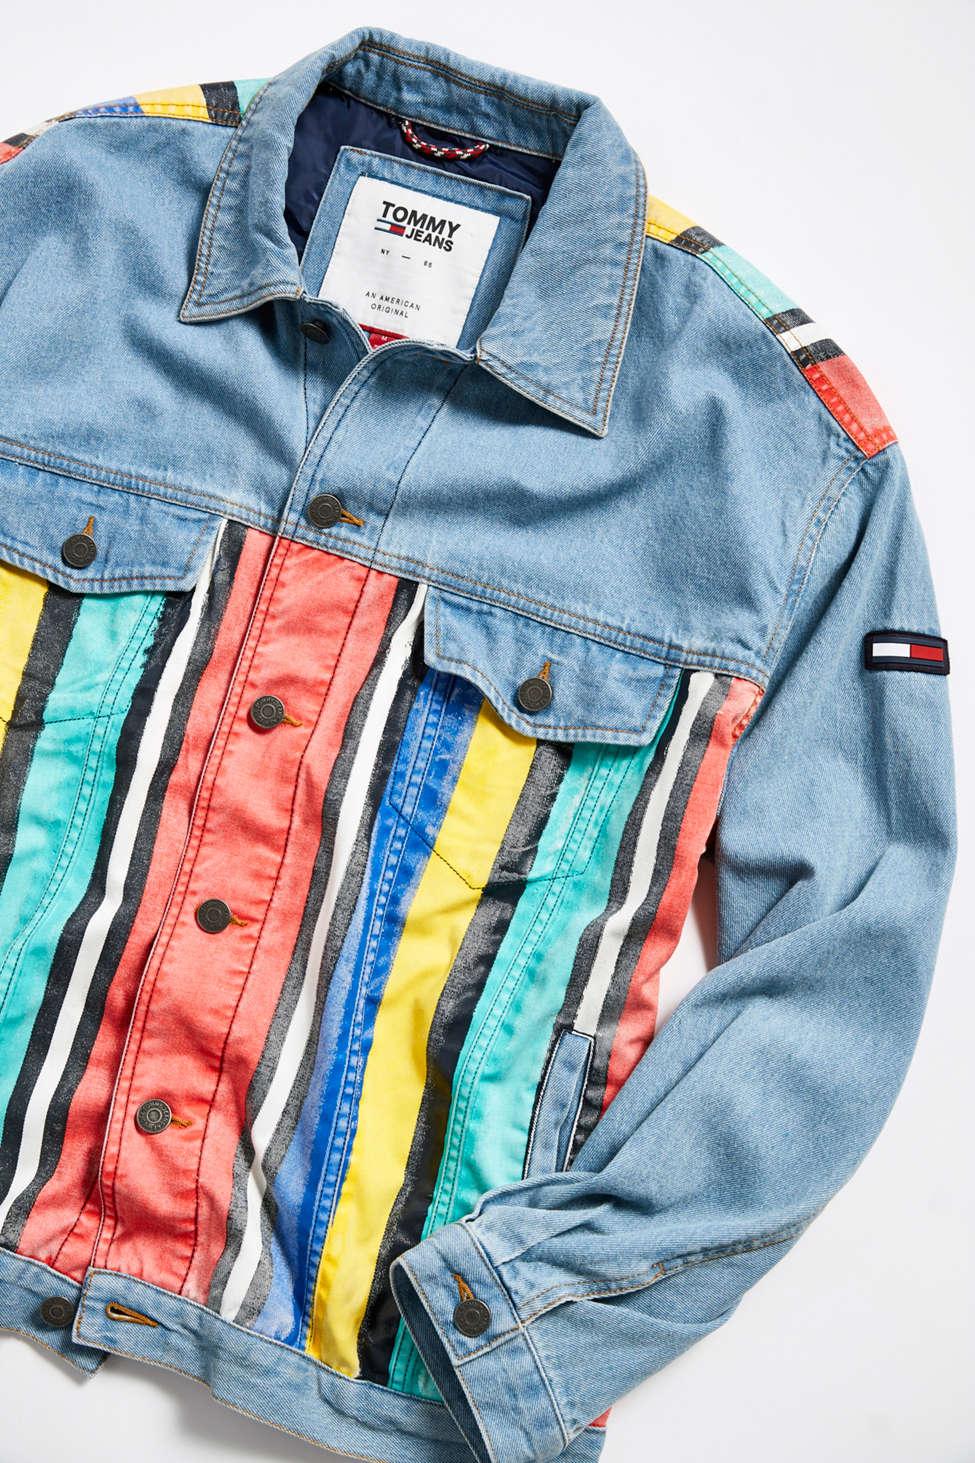 Tommy Hilfiger Stripe Denim Jacket in Light Indigo / (Blue) for Men - Lyst